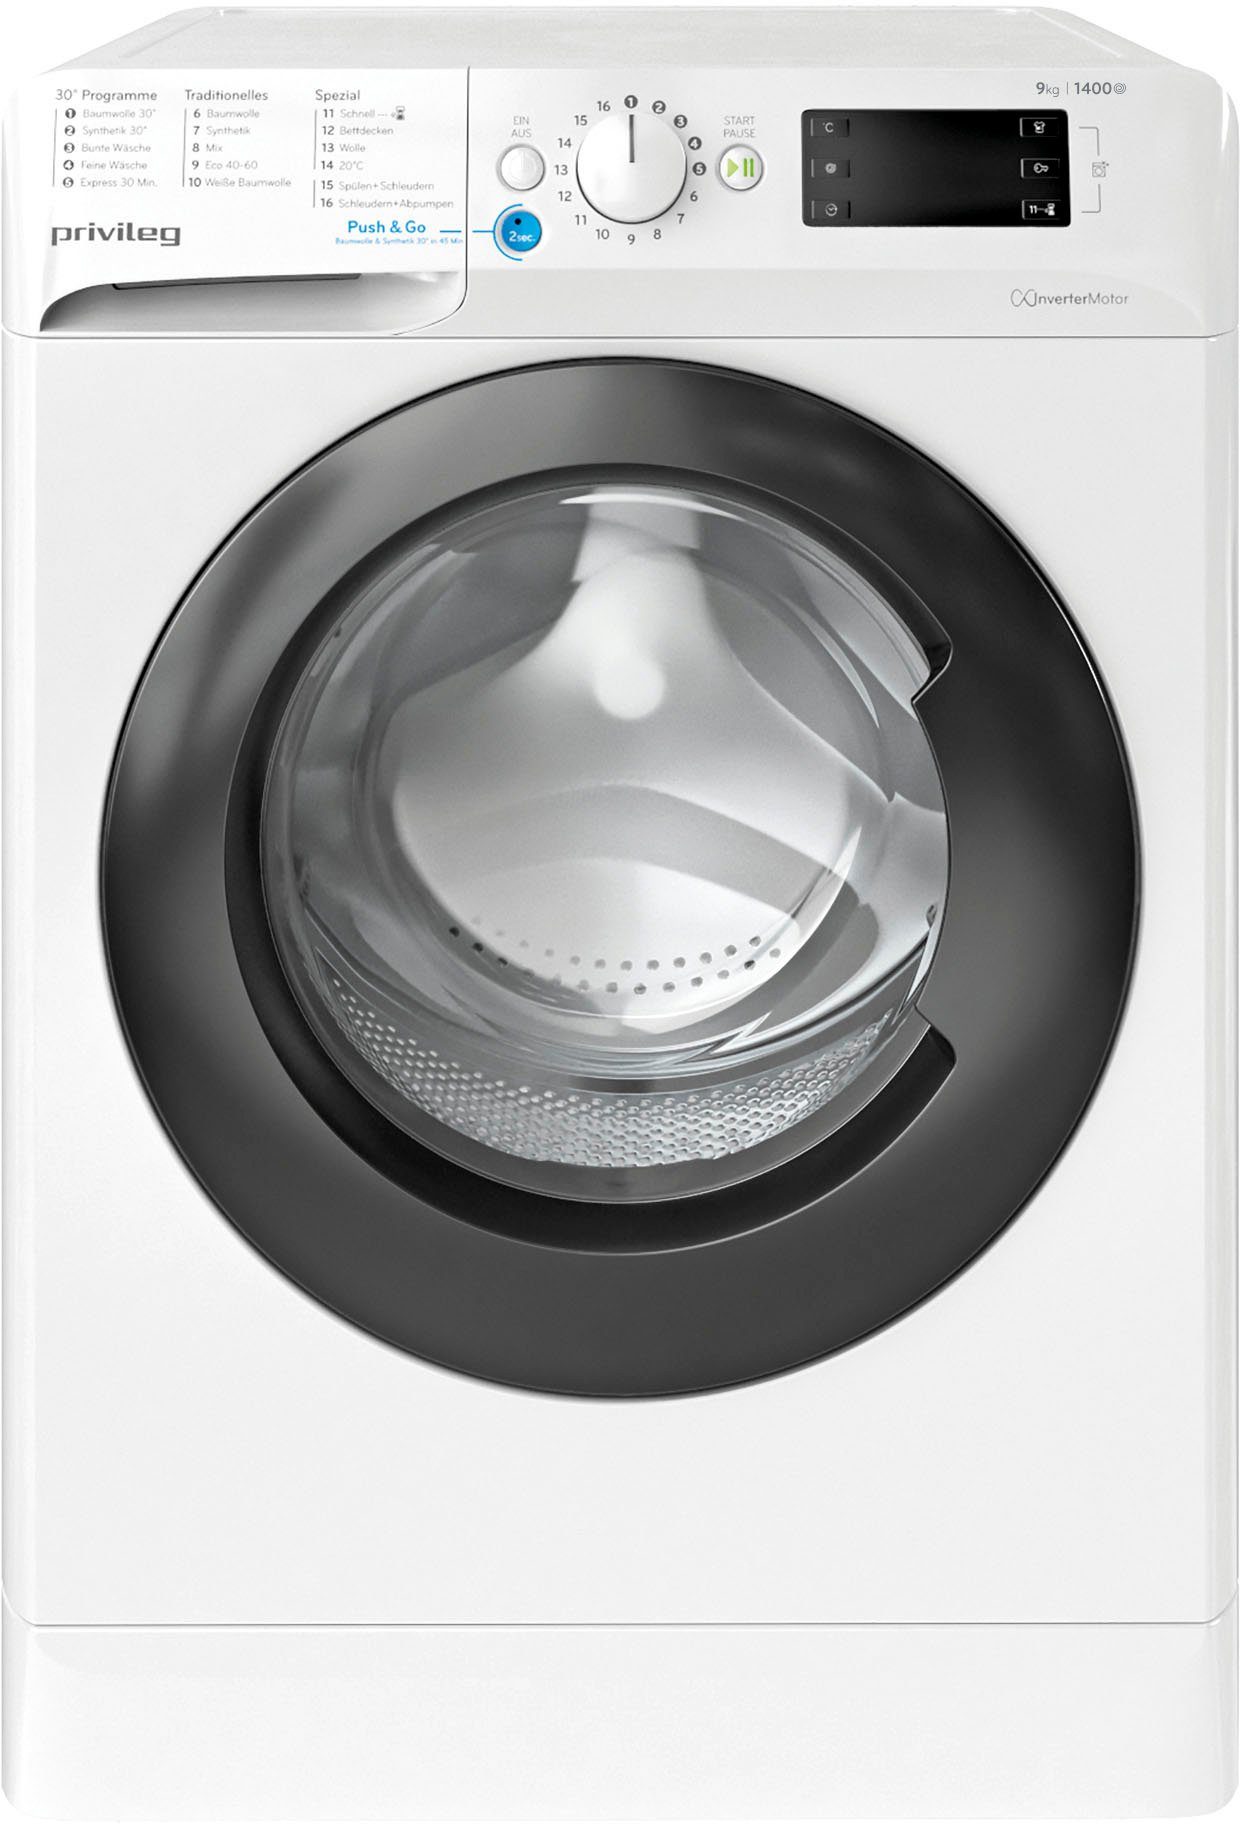 Privileg Waschmaschine 953 1400 PWF X A, kg, 9 U/min